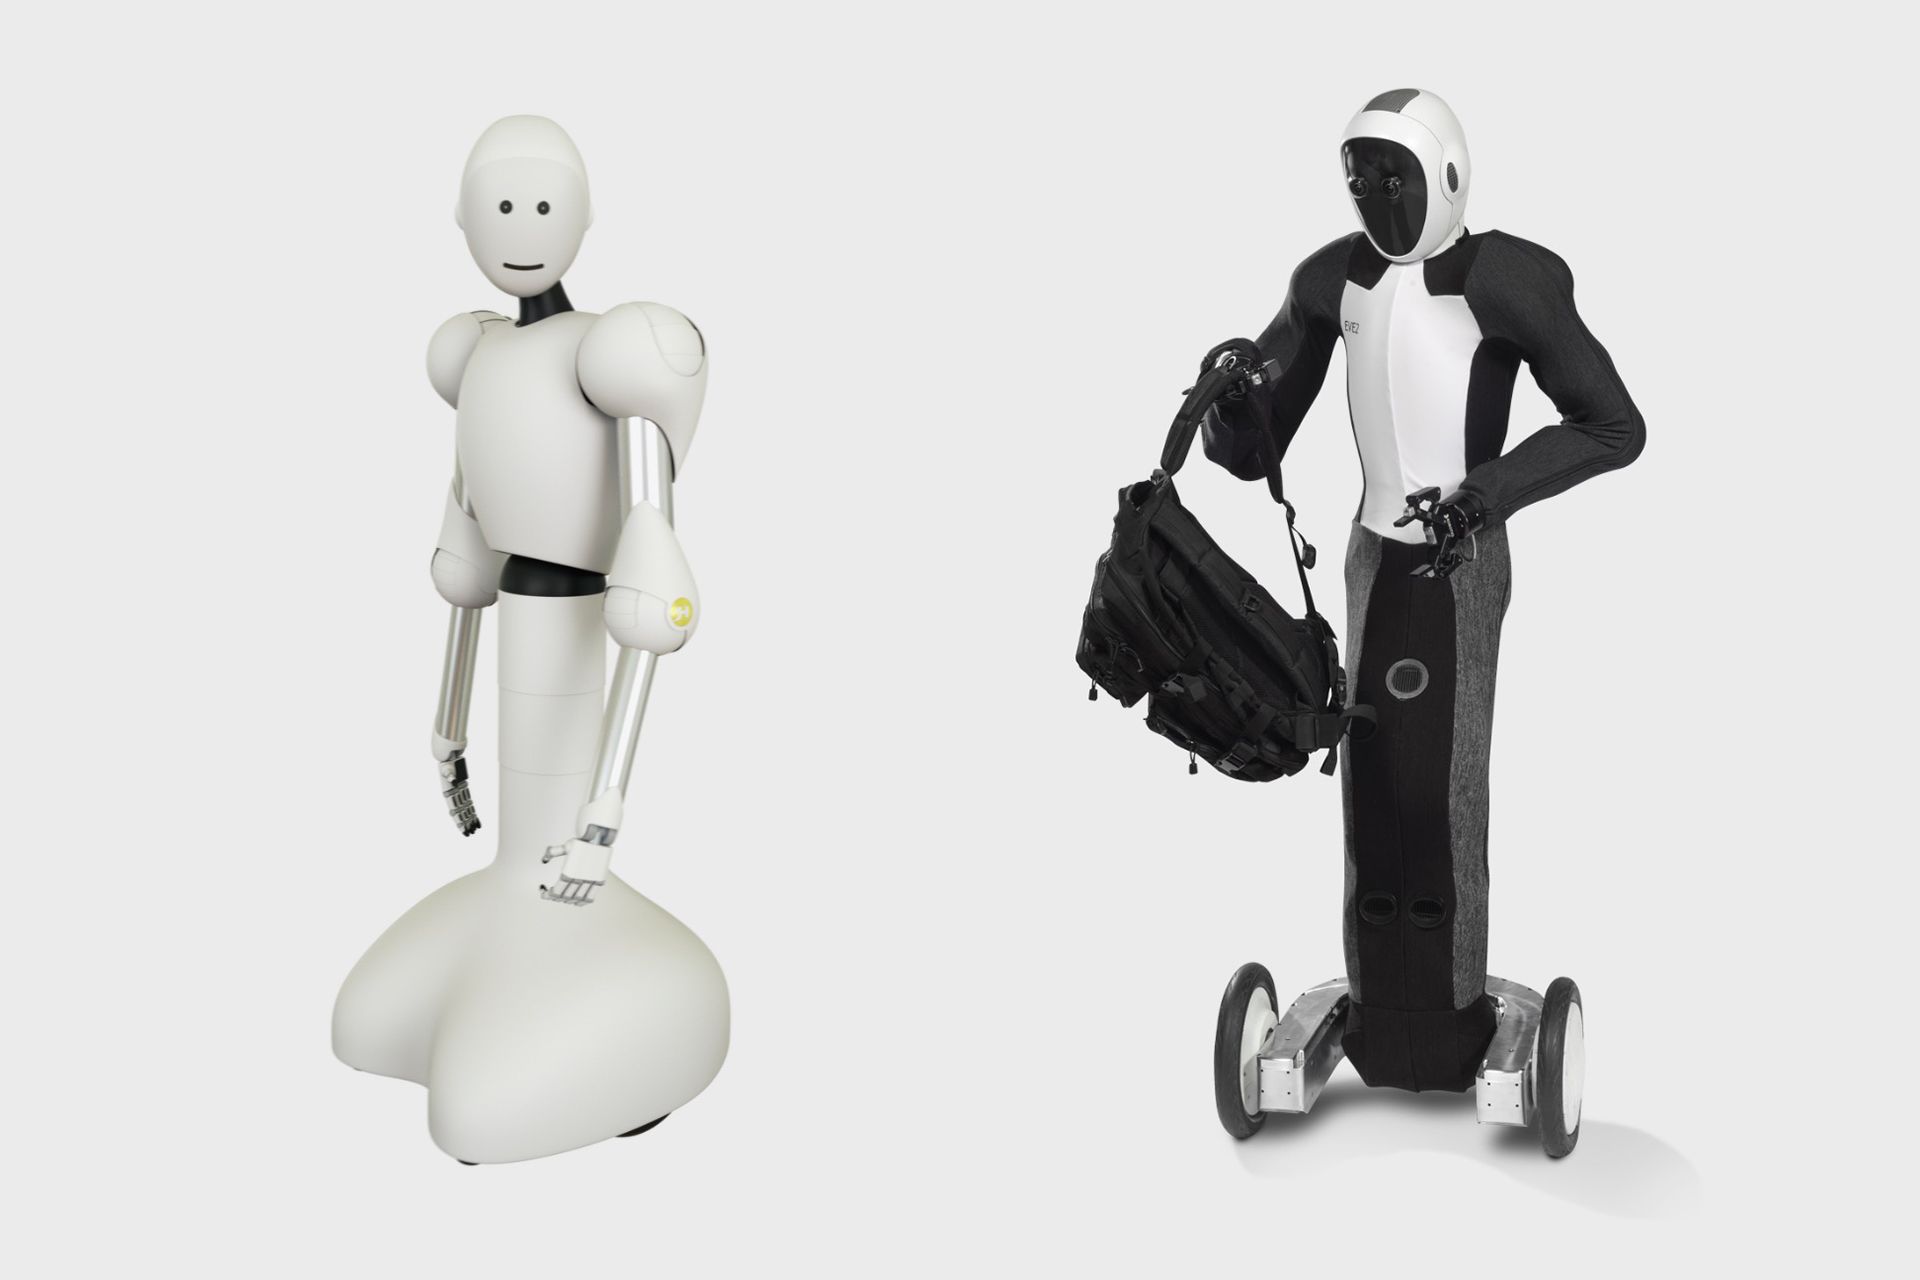 ربات انسان نمای EVE که در دو حالت با لباس و بدون لباس دیده می شود